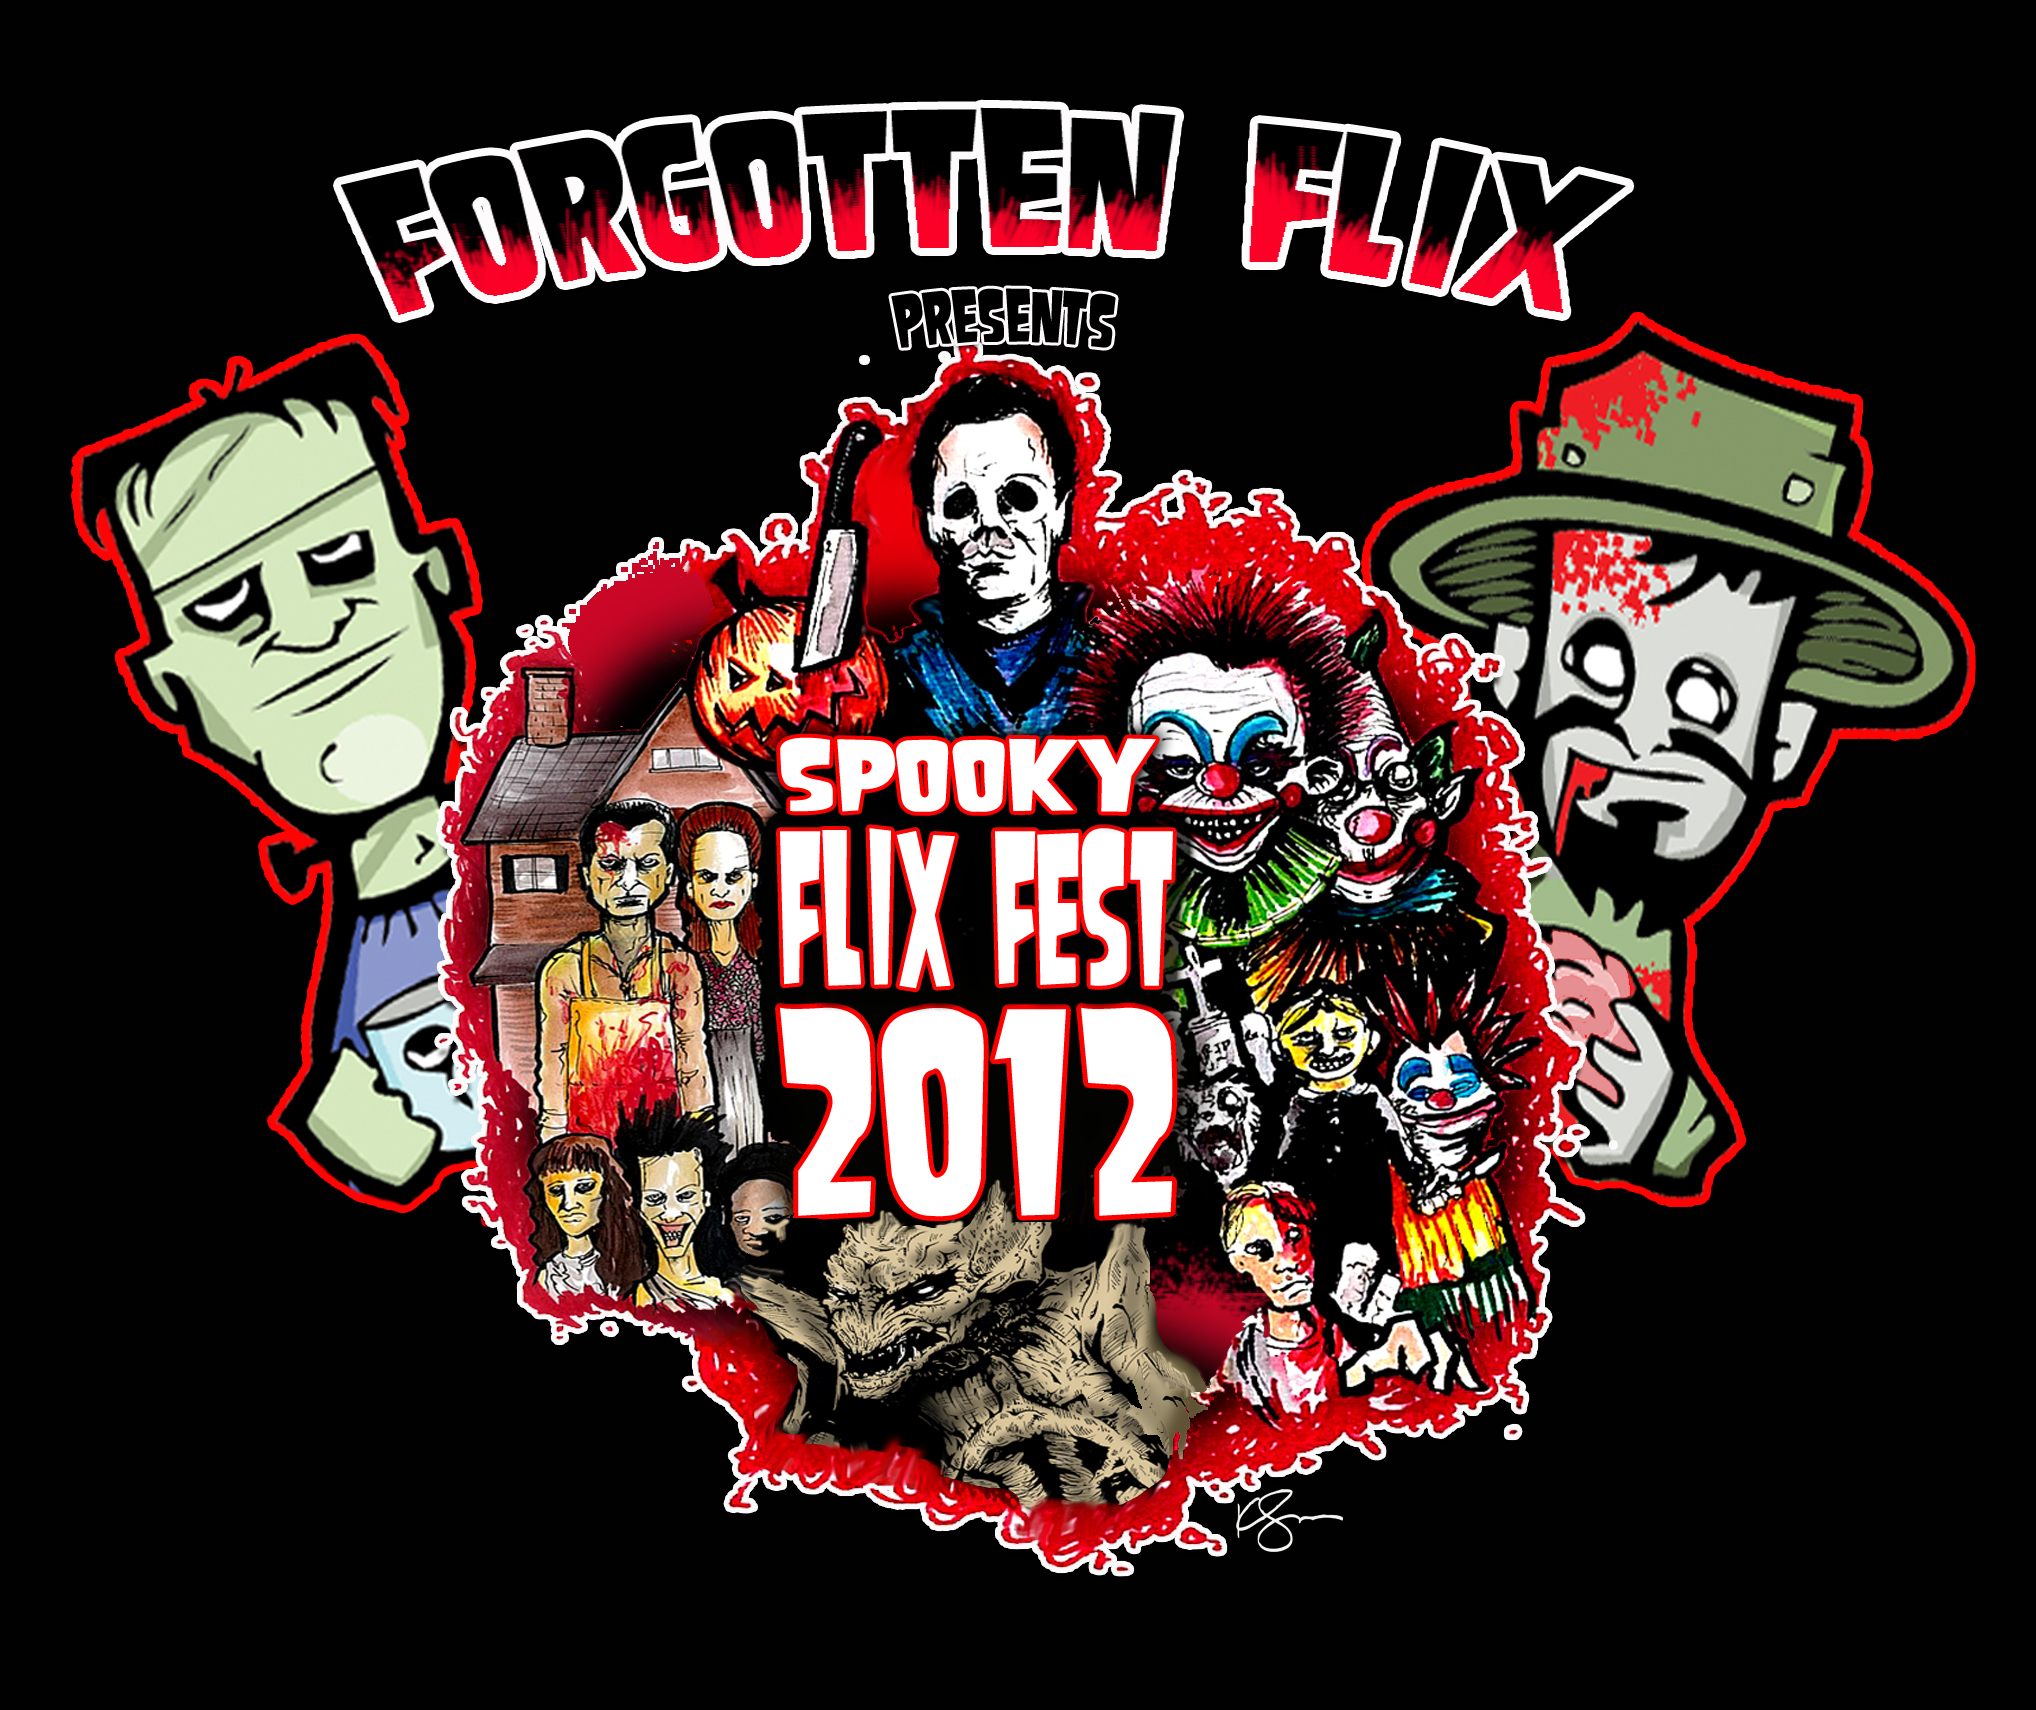 2012 Spooky Flix Fest Logo - Courtesy of Kevin Spencer @ inkspatters.com